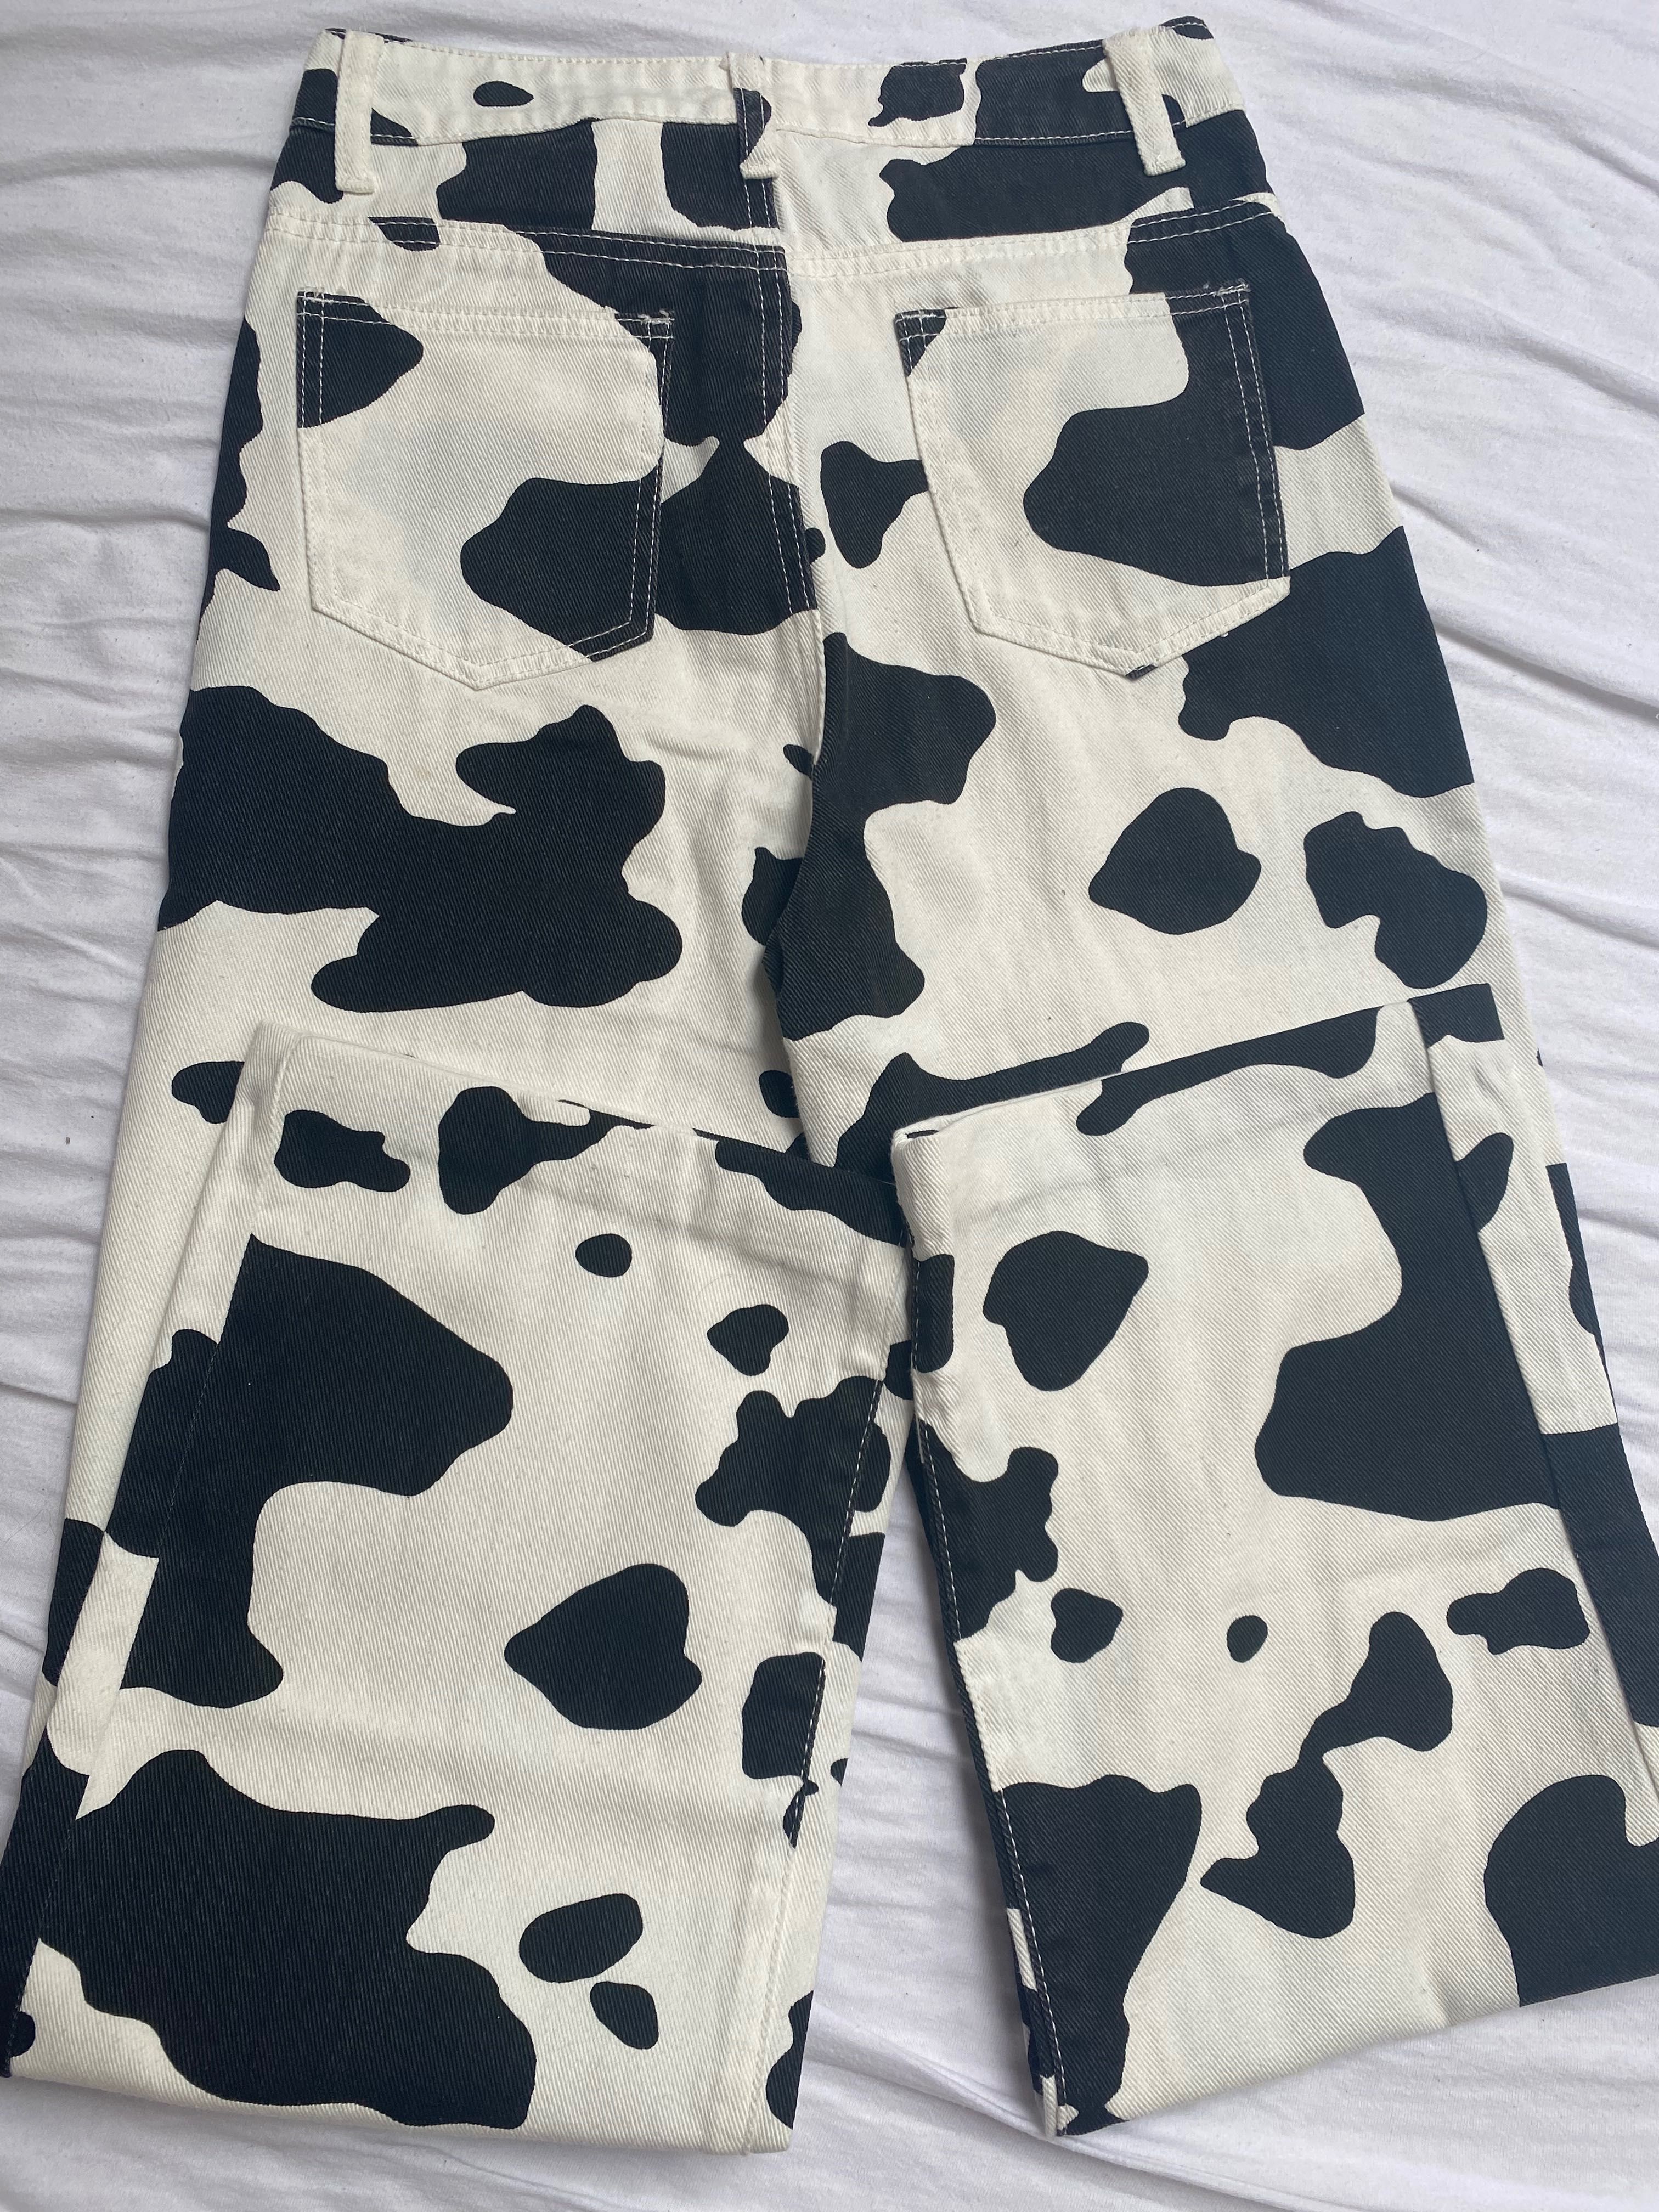 Spodnie wzór krowa, szerokie nogawki